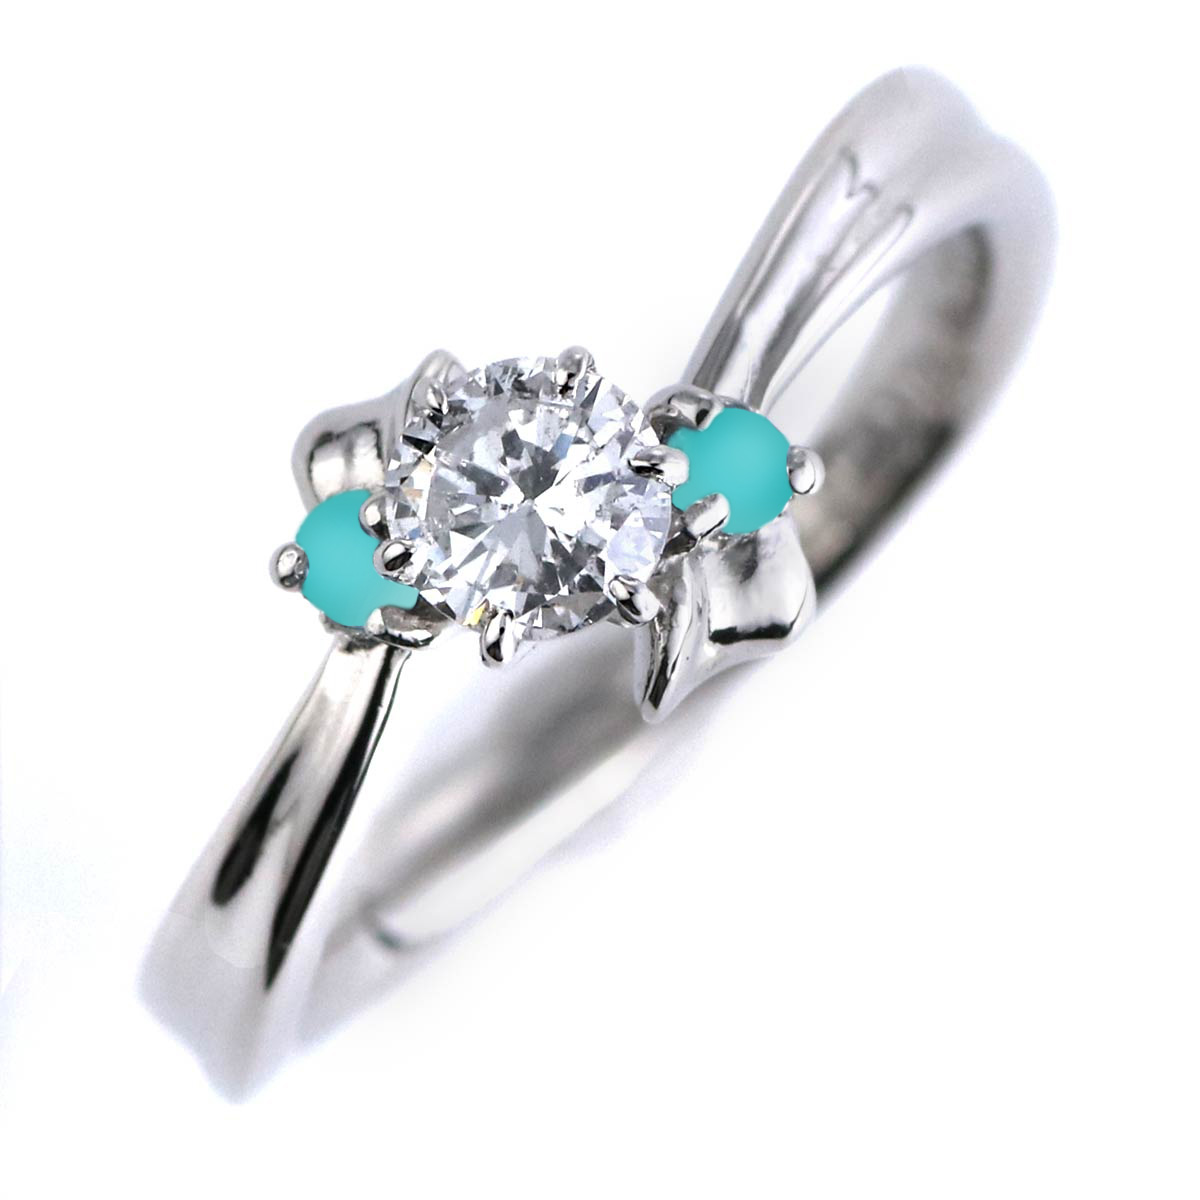 婚約指輪 ダイヤモンド プラチナリング 一粒 大粒 指輪 エンゲージリング 0.4ct プロポーズ用 レディース 人気 ダイヤ 刻印無料 12月 誕生石 ターコイズ